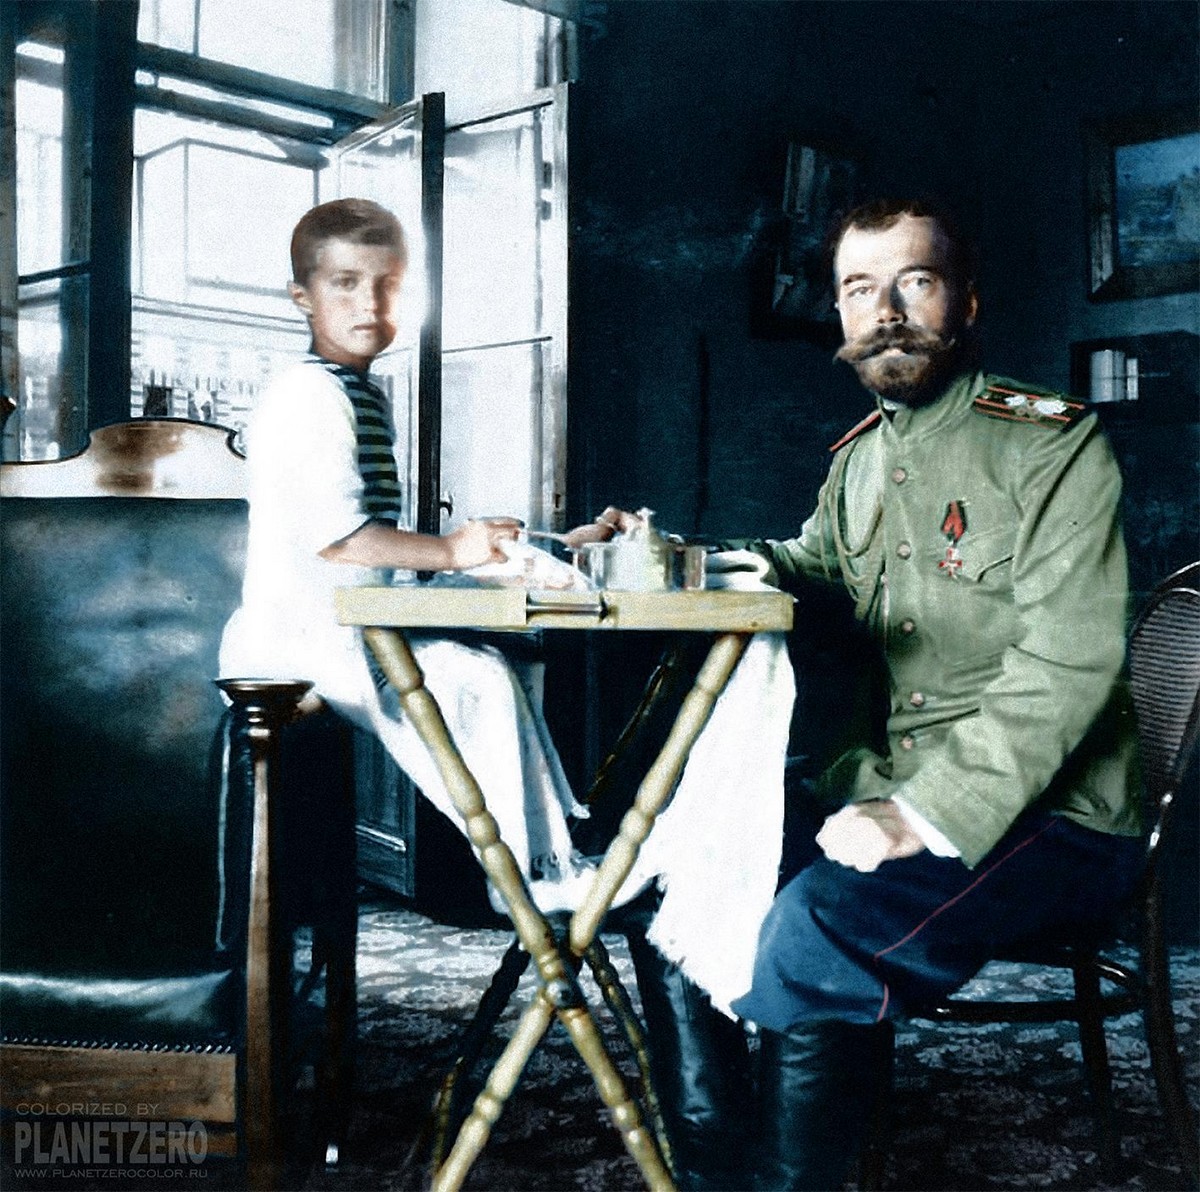 Николай II, Ленин и большевики на исторических снимках в цвете